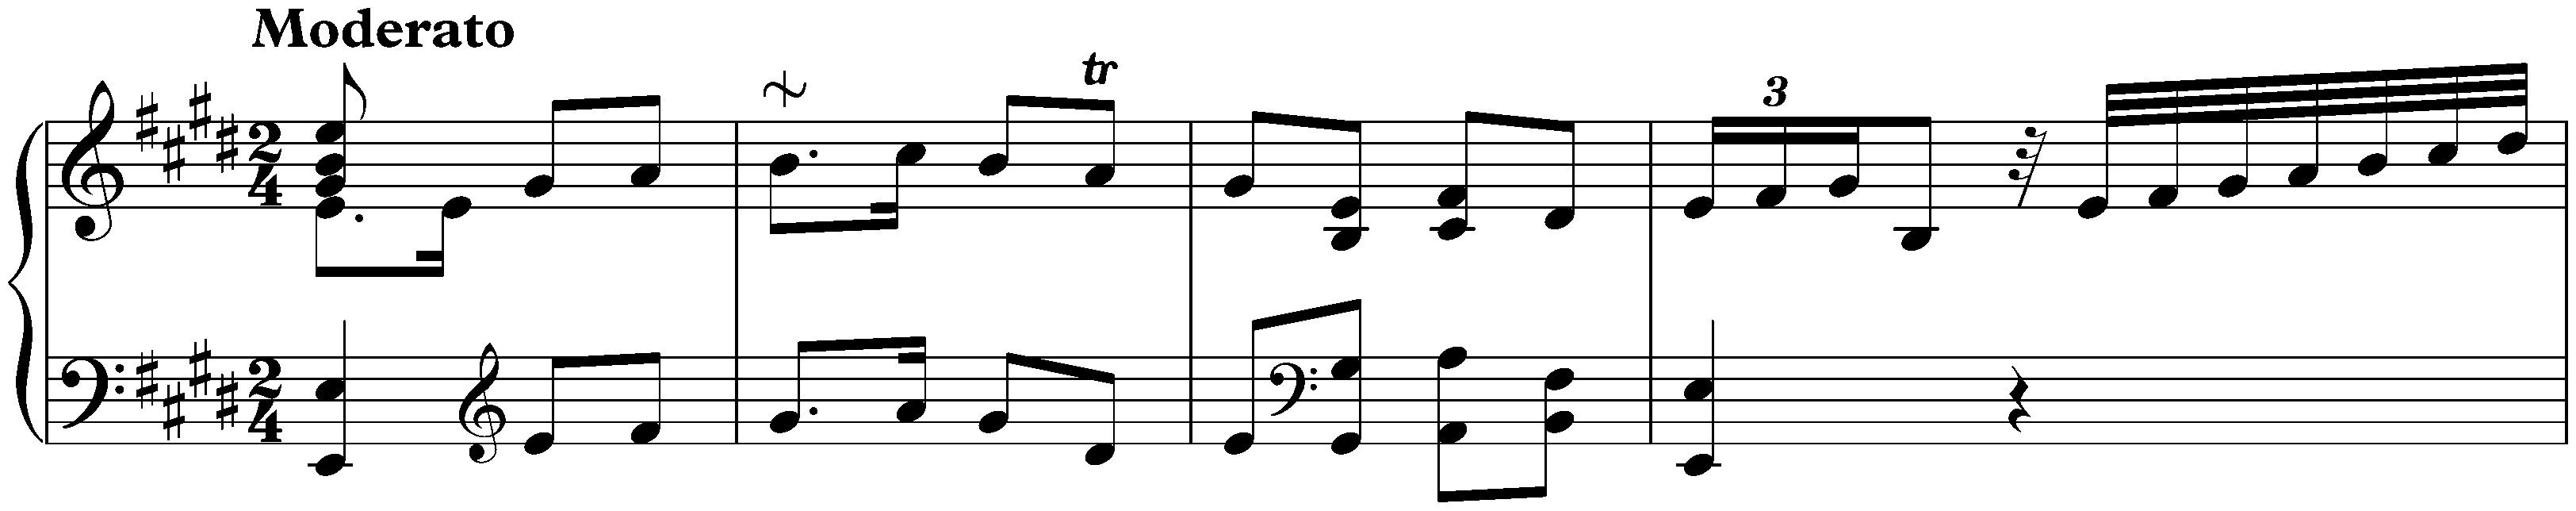 Sonata in E major, Hob. XVI:13; 1. Moderato